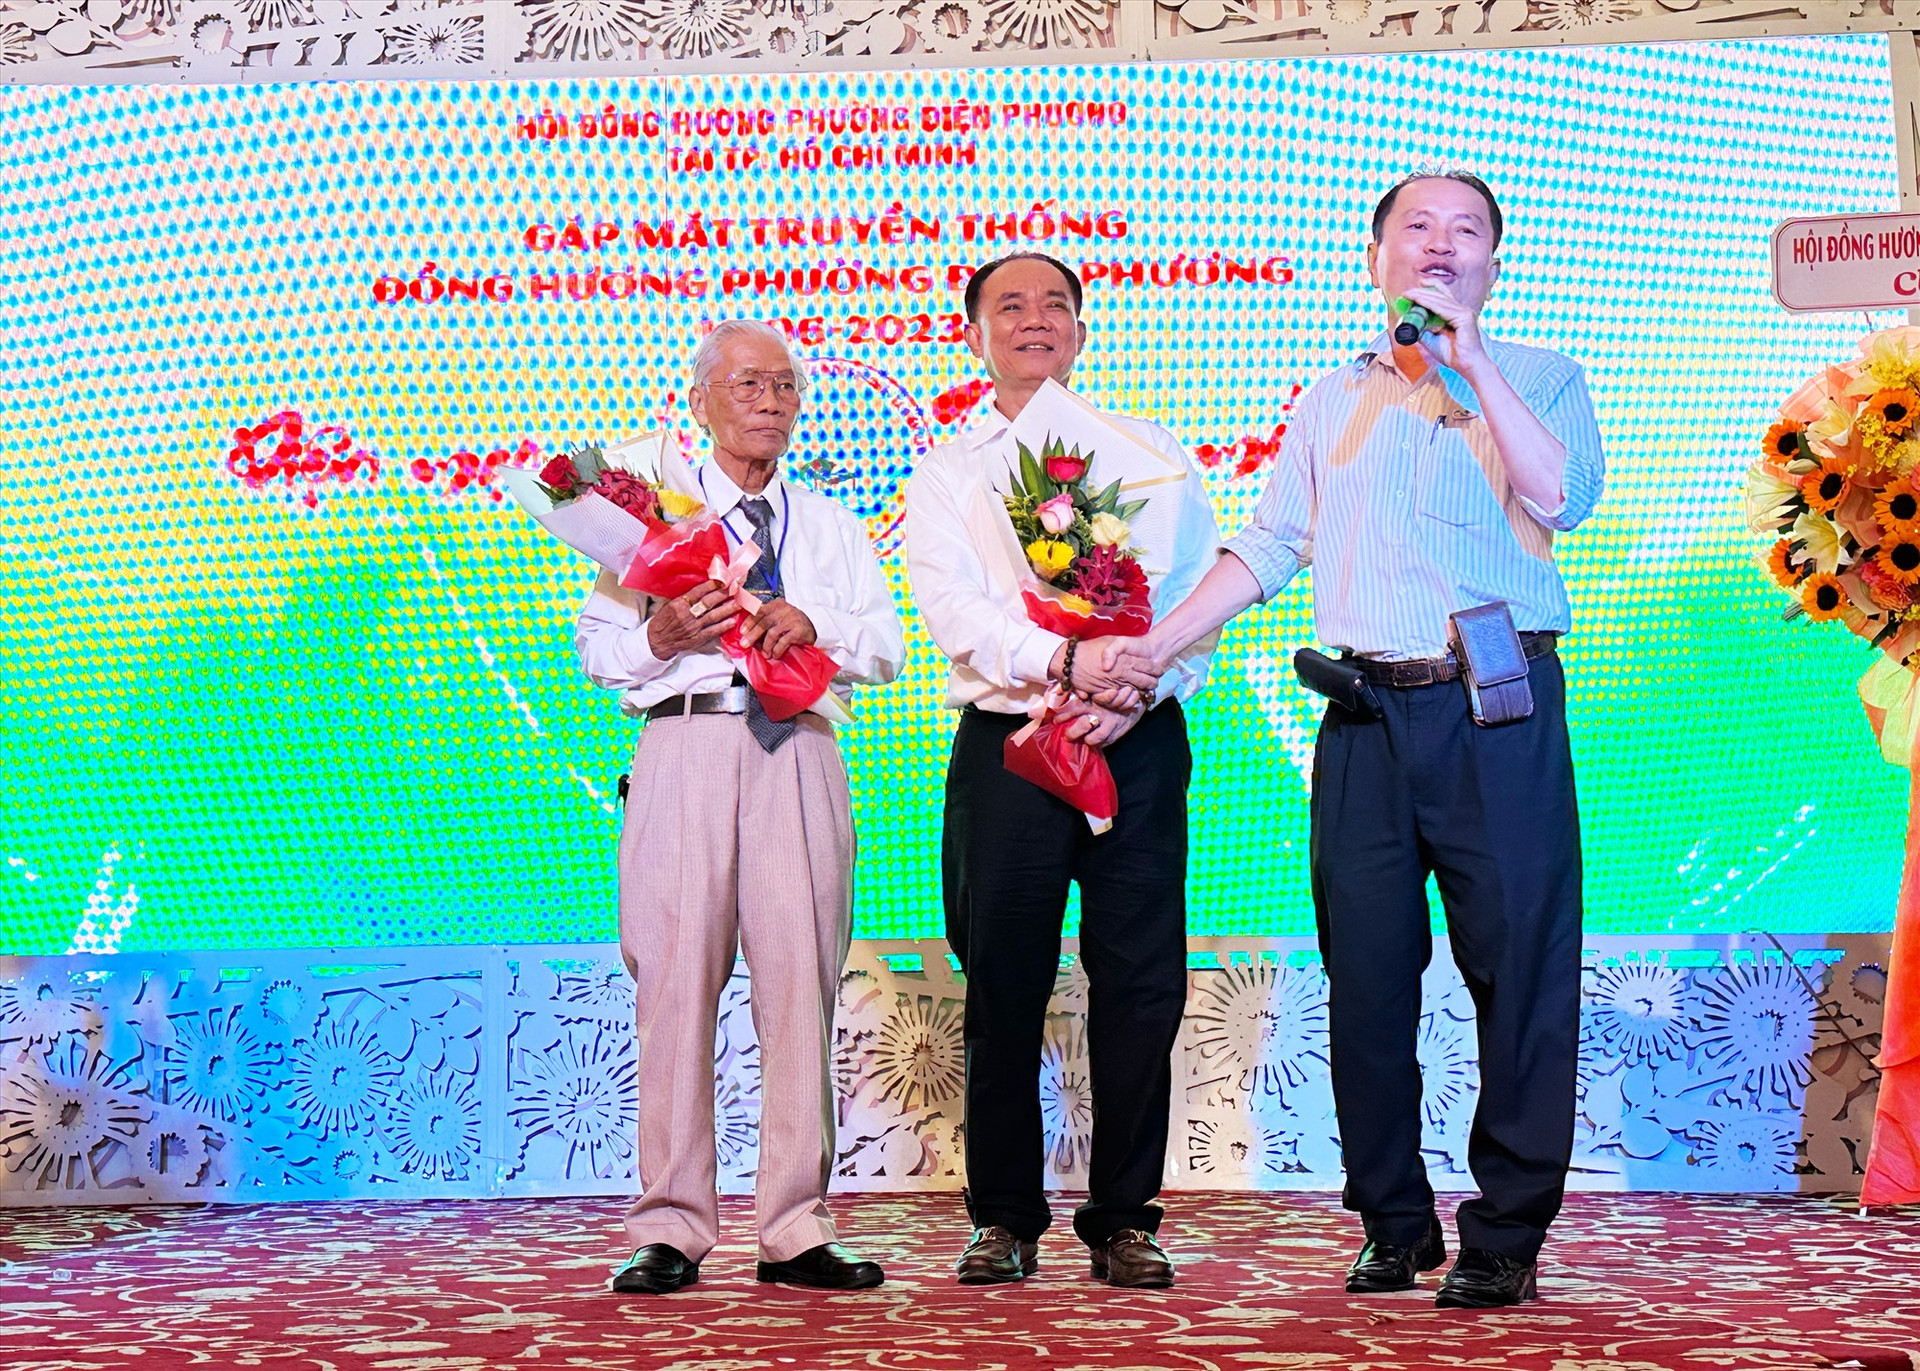 Tri ân Ban cố vấn Hội đồng hương Điện Phương tại TP.Hồ Chí Minh.